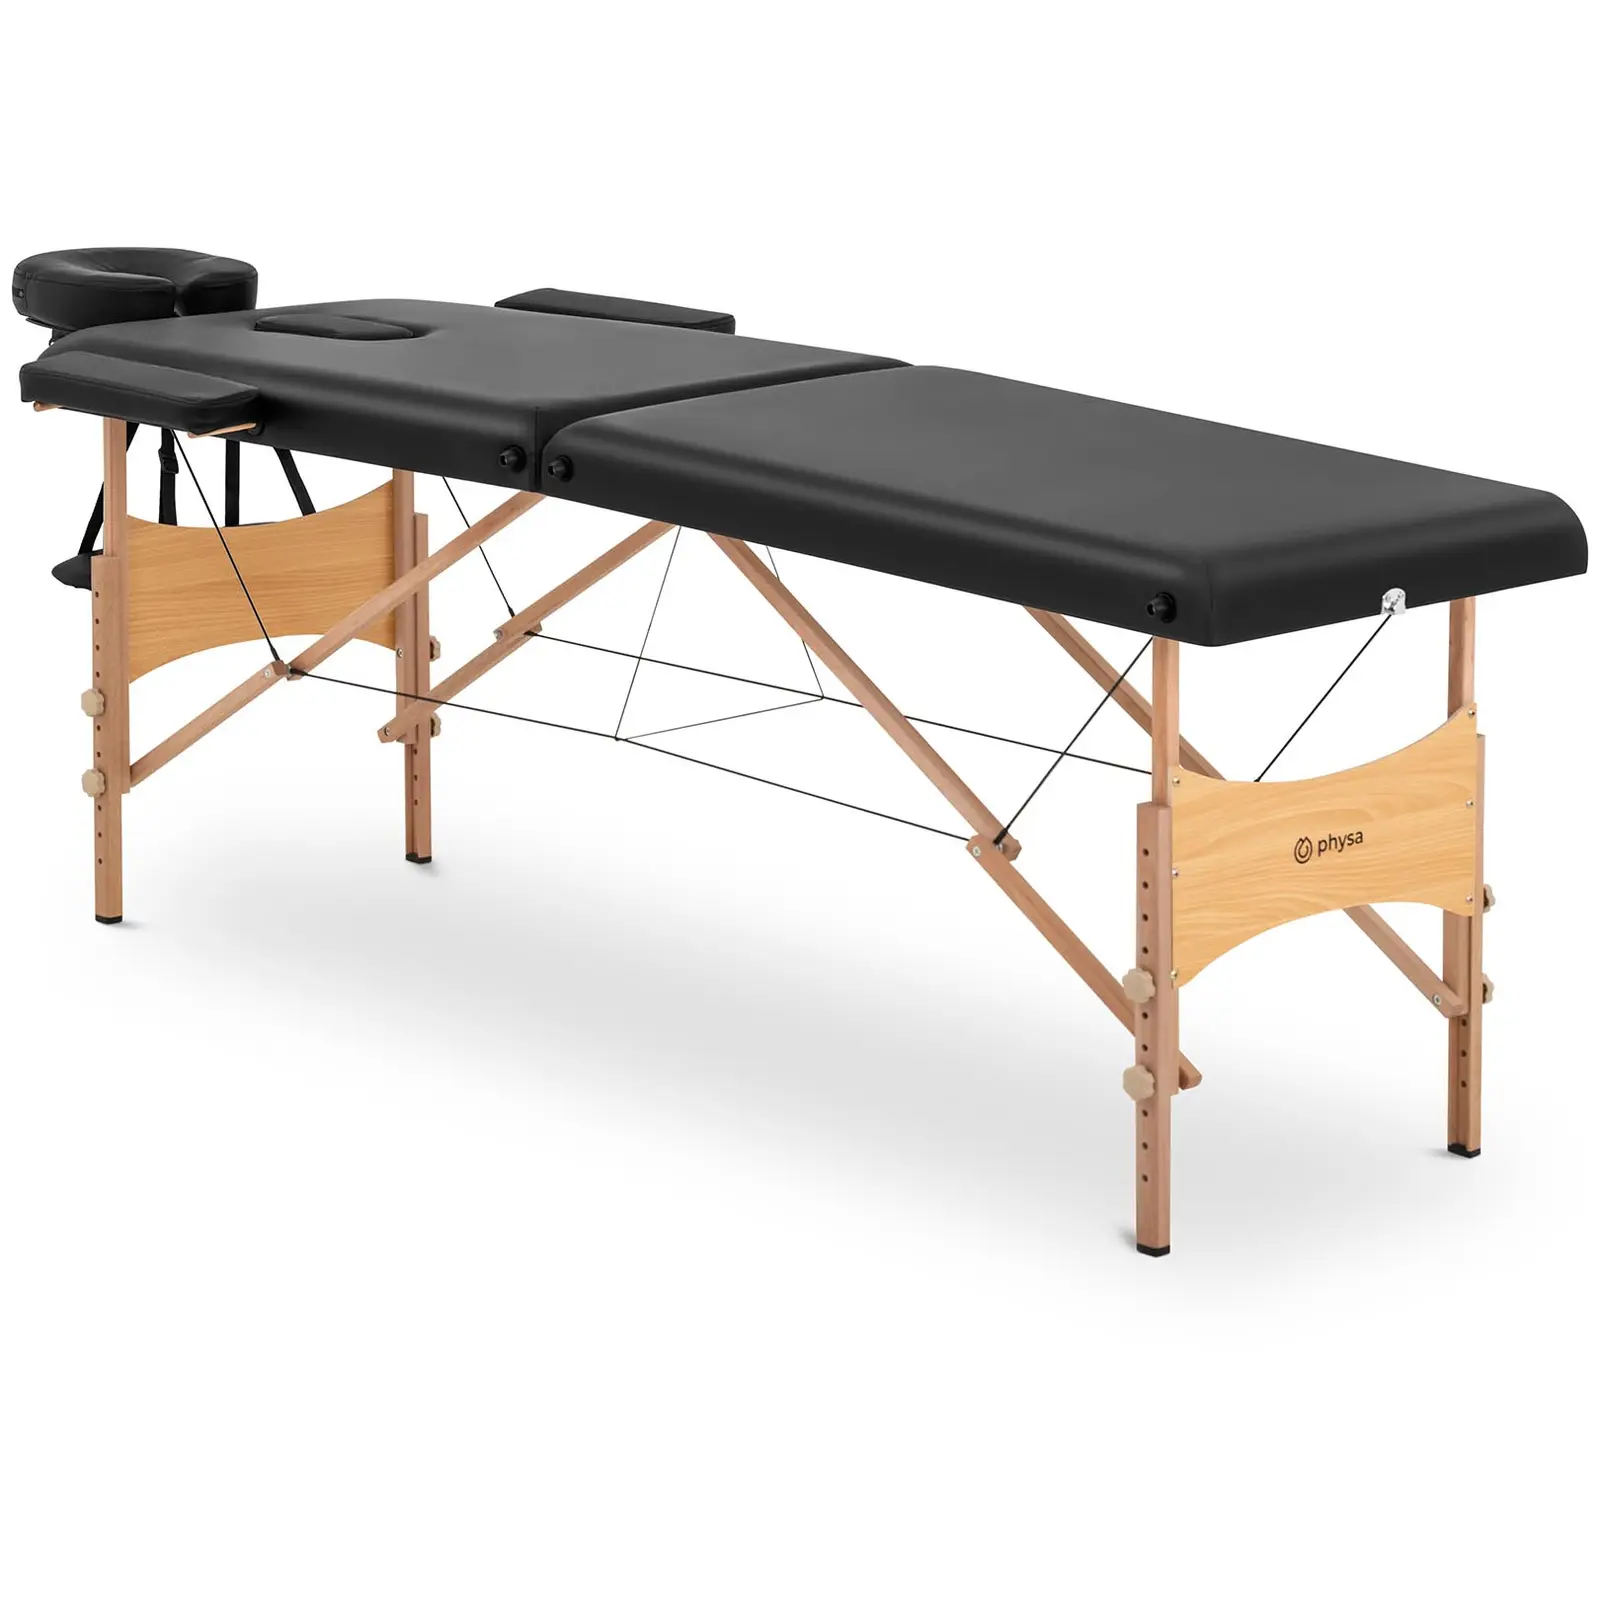 Camilla de masaje plegable - extra ancha (70 cm) - reposacabezas y reposapies inclinables - madera de haya - negra